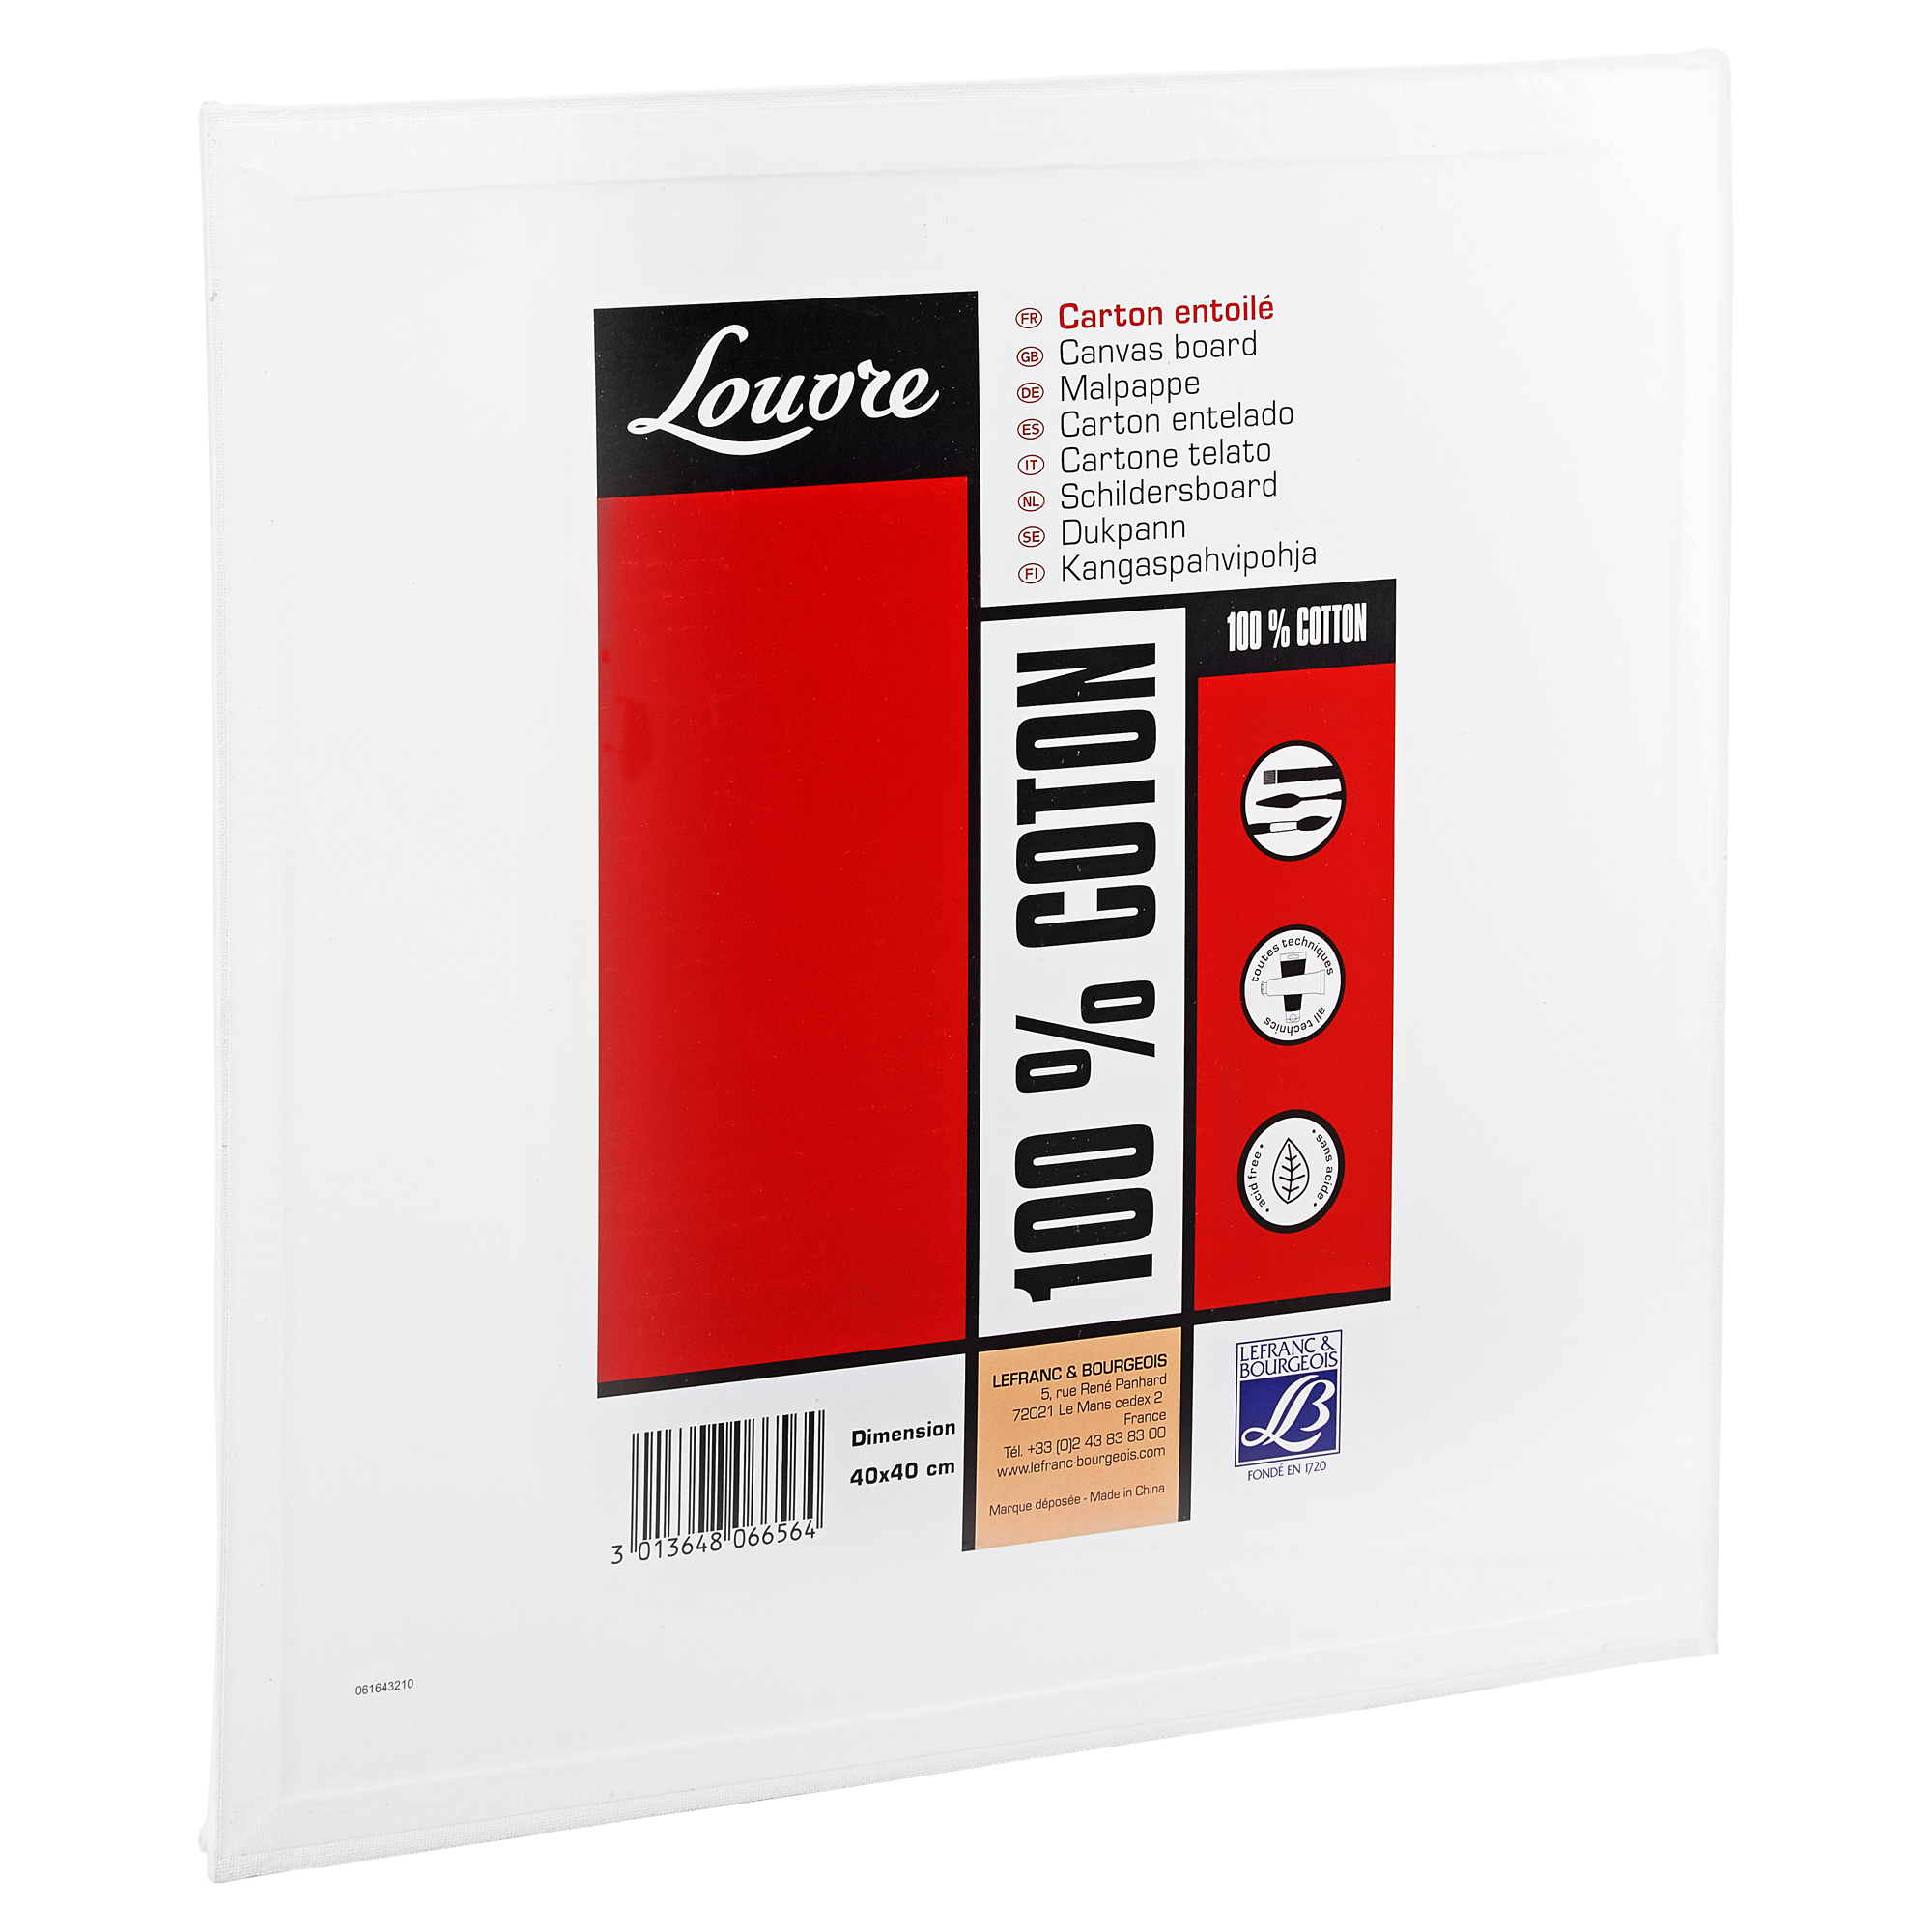 Malpappe "Louvre" Karton baumwollbespannt weiß 40 x 40 cm + product picture